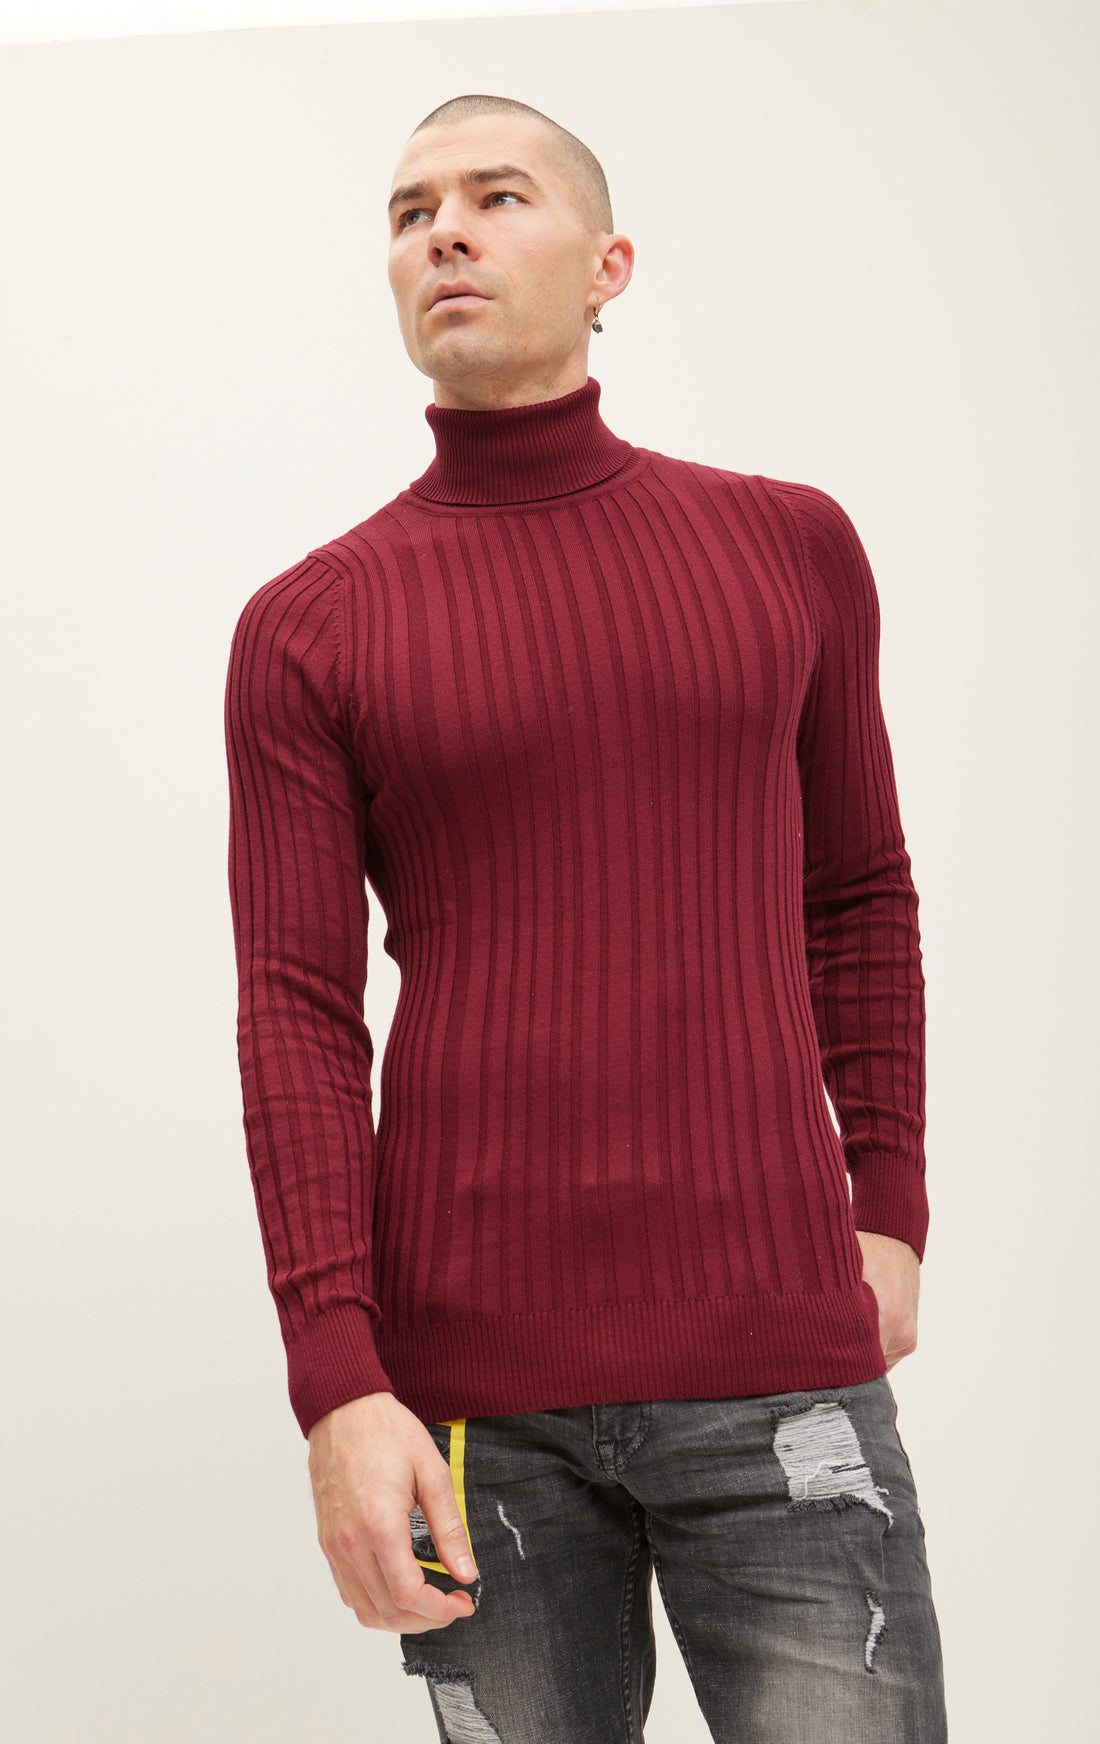 Ребристый свитер с круглым вырезом - бордовый